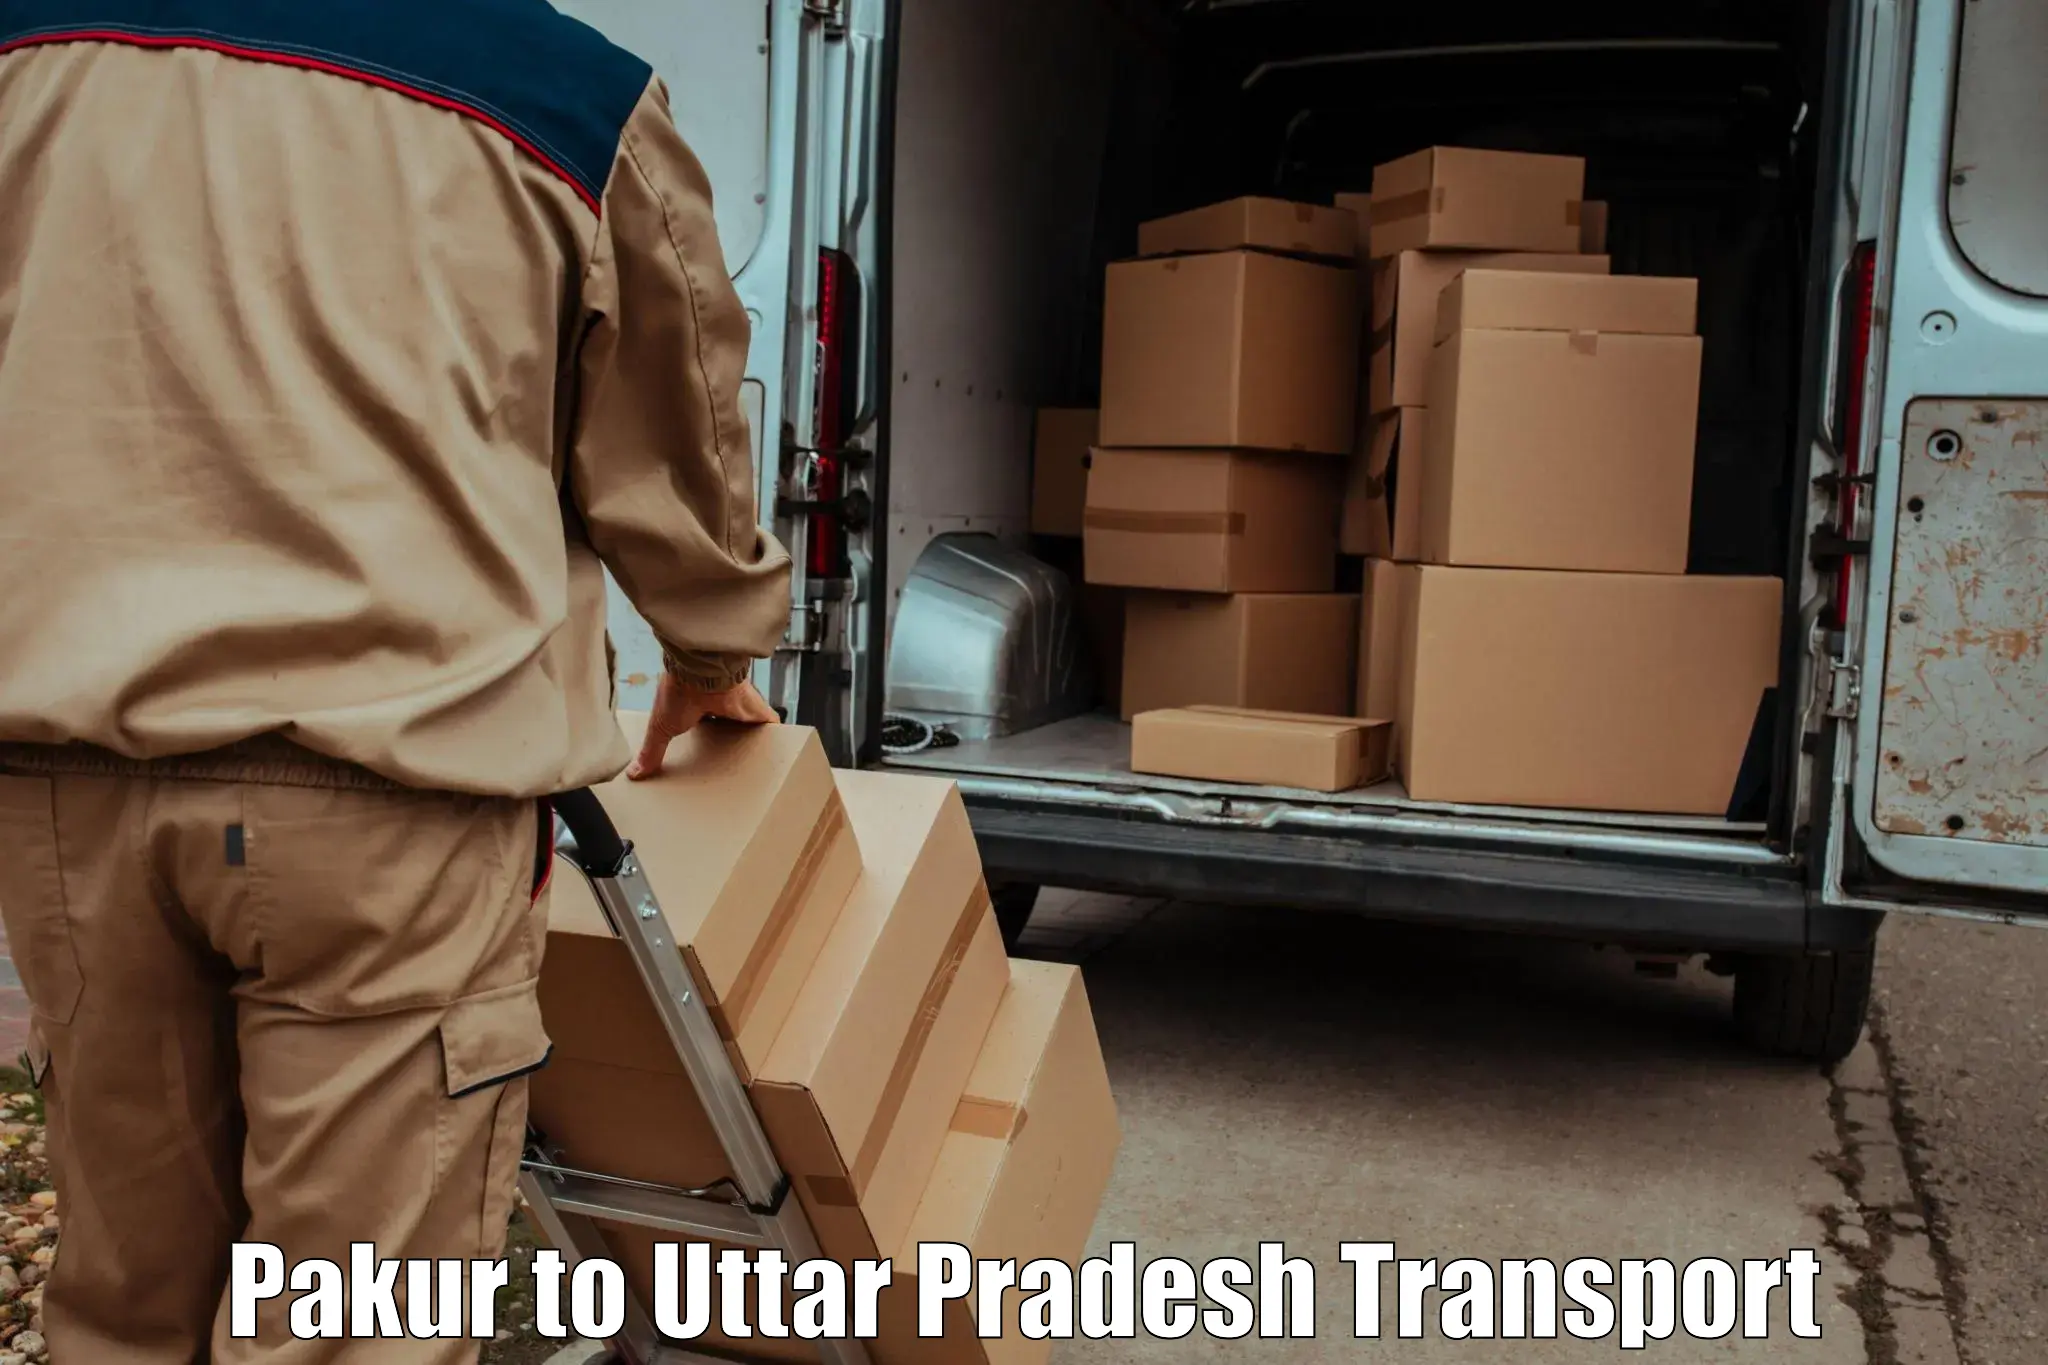 Furniture transport service Pakur to Sikriganj